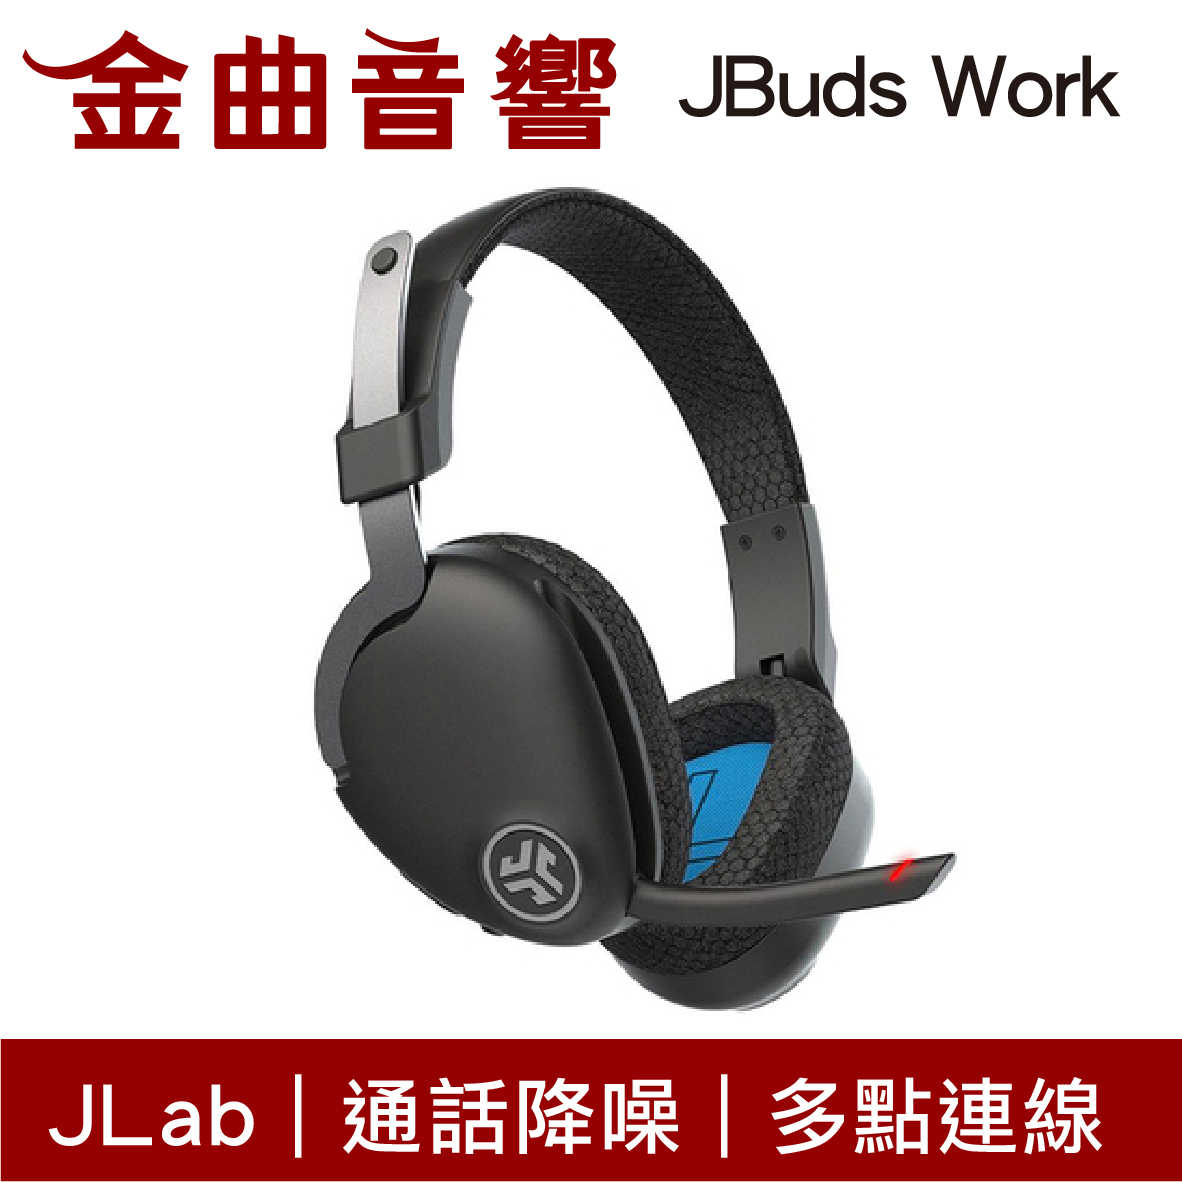 JLab JBuds Work 通話降噪 40mm驅動 工作 辦公 多點連線 藍牙 耳罩式 耳機 | 金曲音響